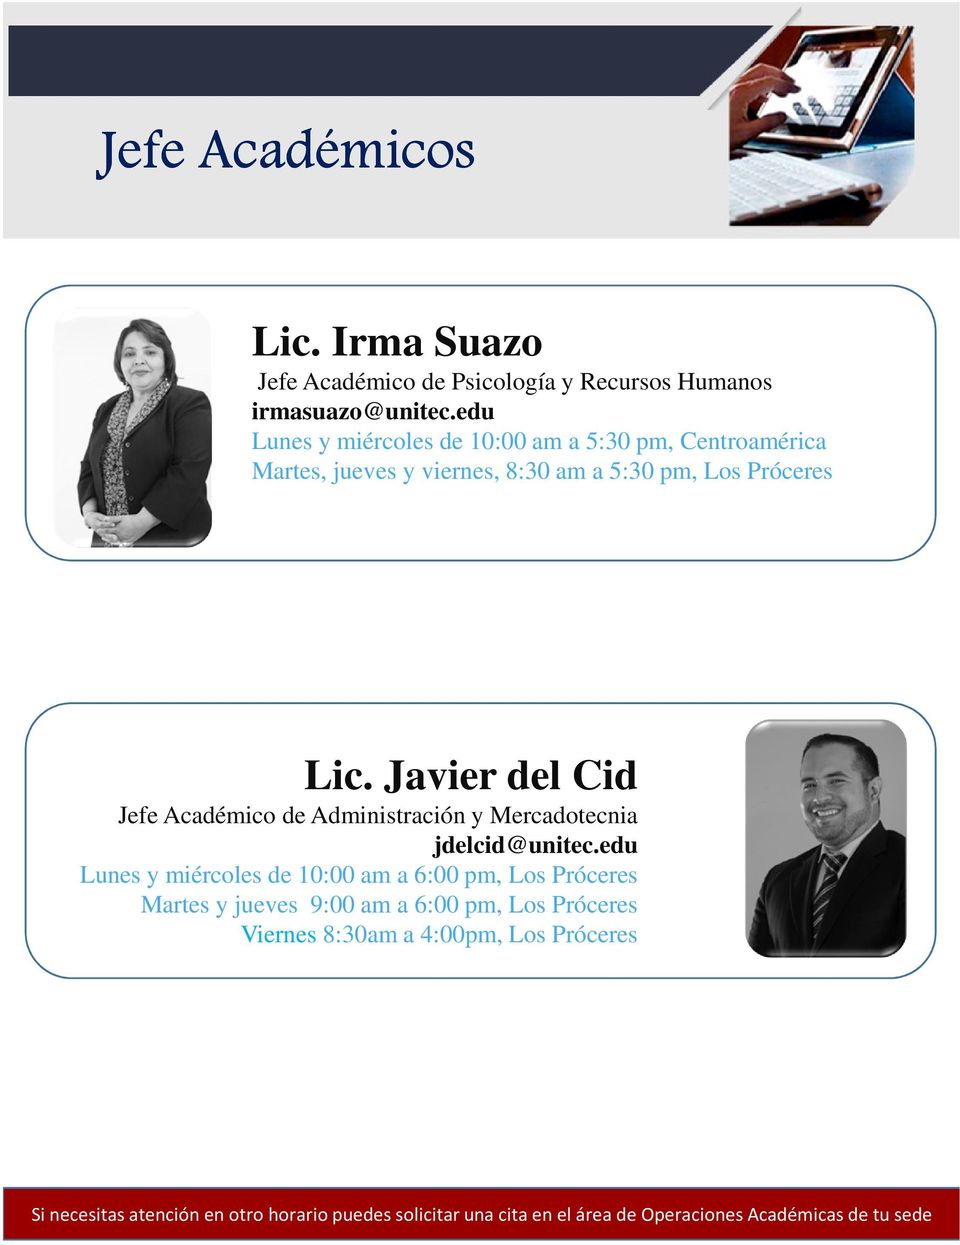 Javier del Cid Jefe Académico de Administración y Mercadotecnia jdelcid@unitec.